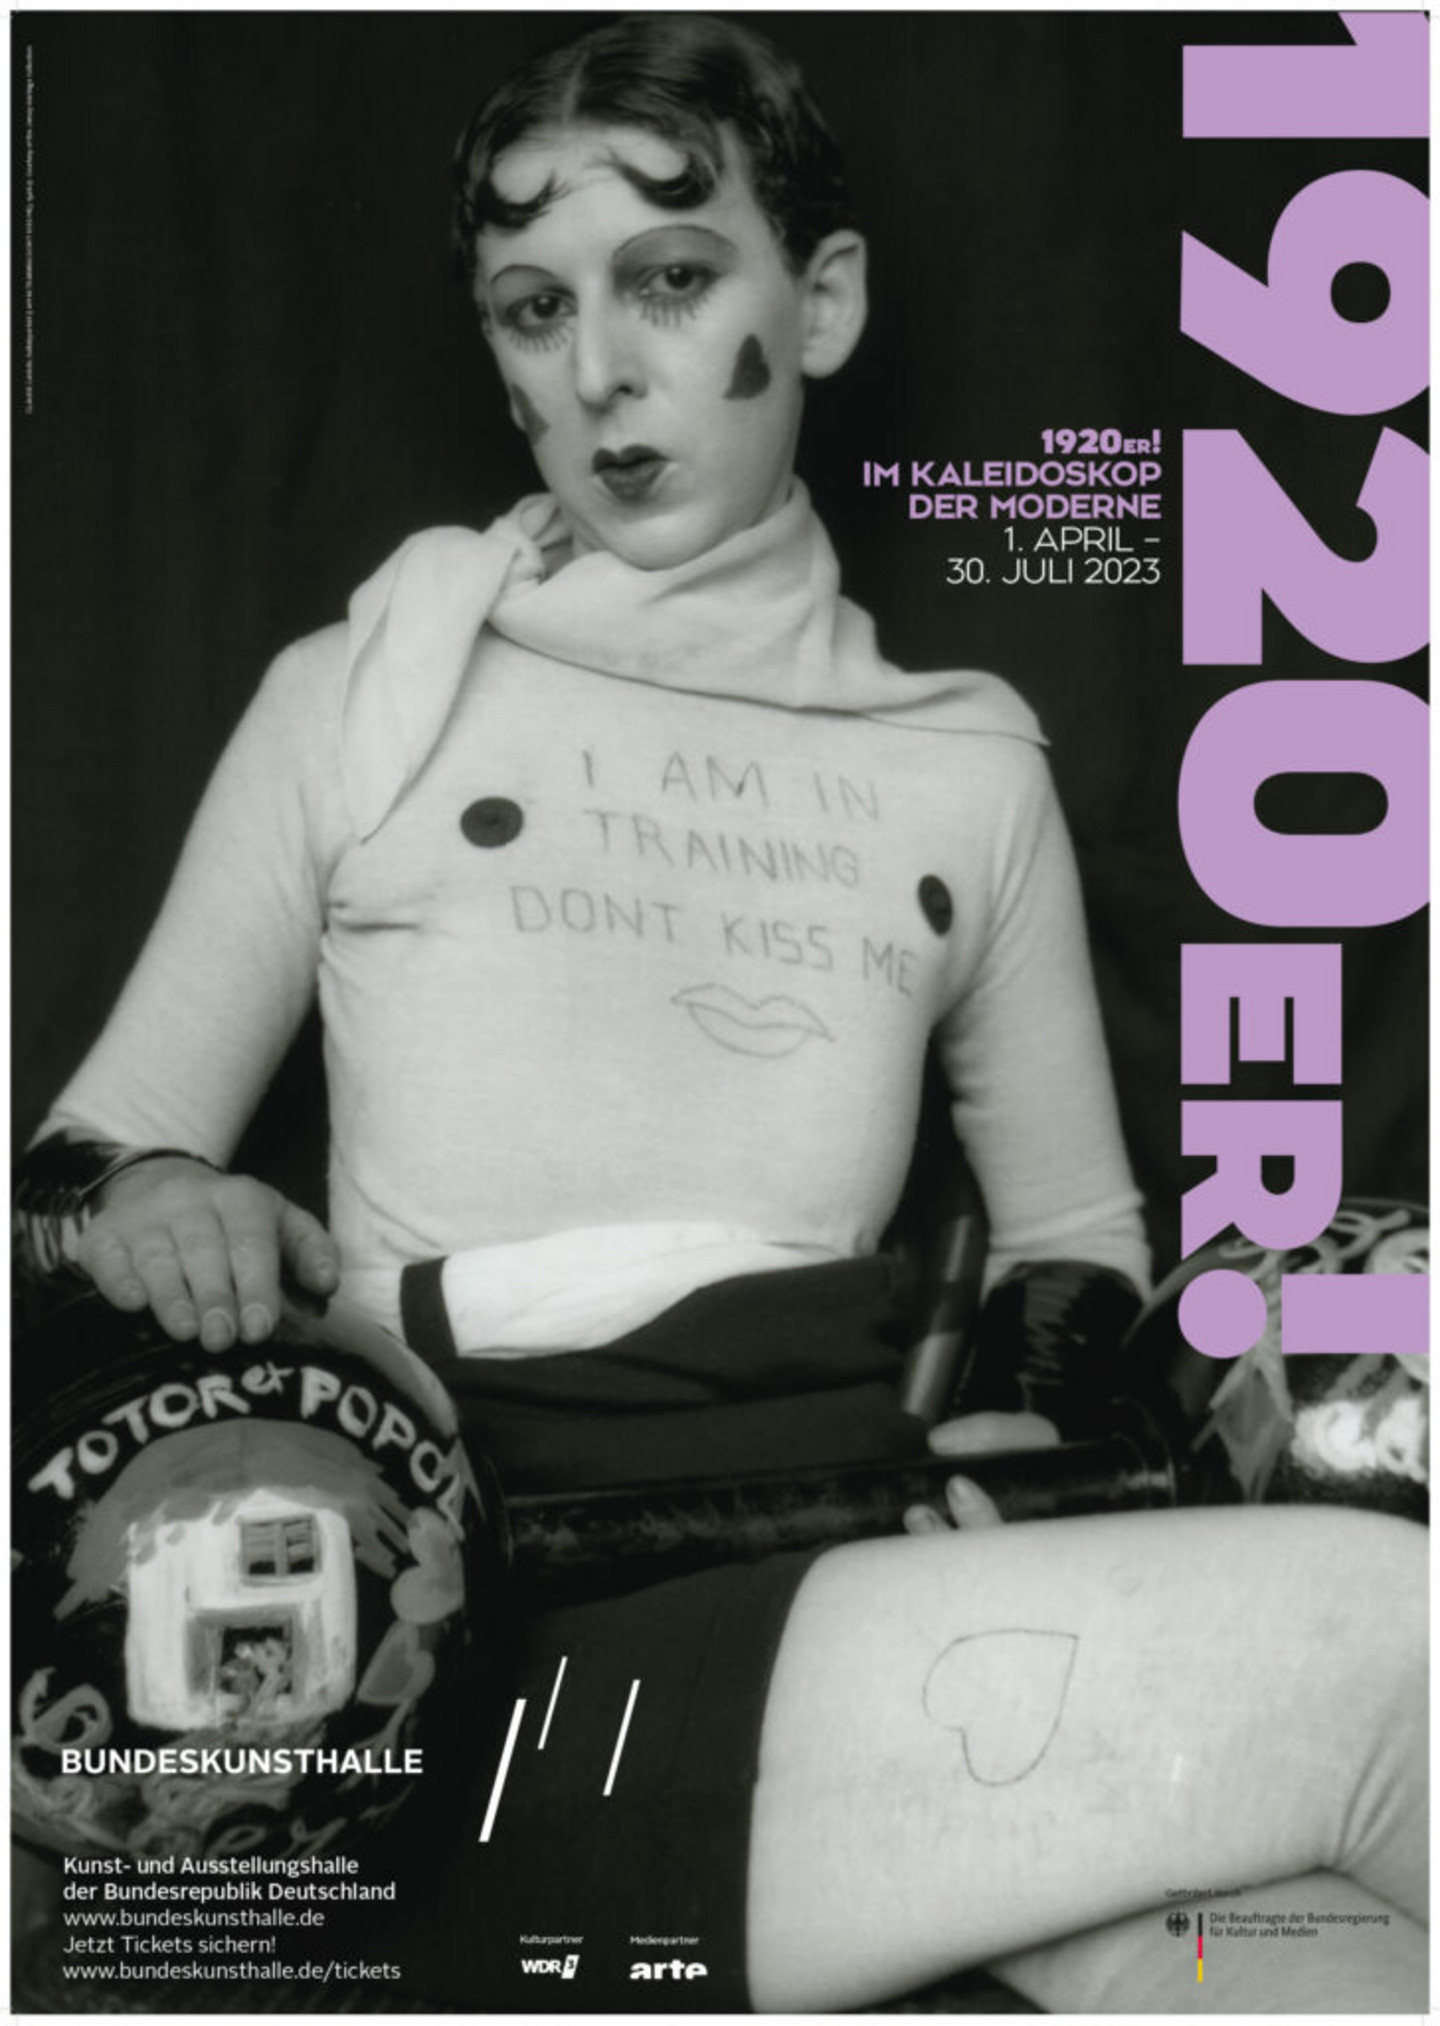 Schwarz-weißes Foto einer geschminkten Frau mit der Schrift "I am in training - don't kiss me" auf ihrem Oberteil.